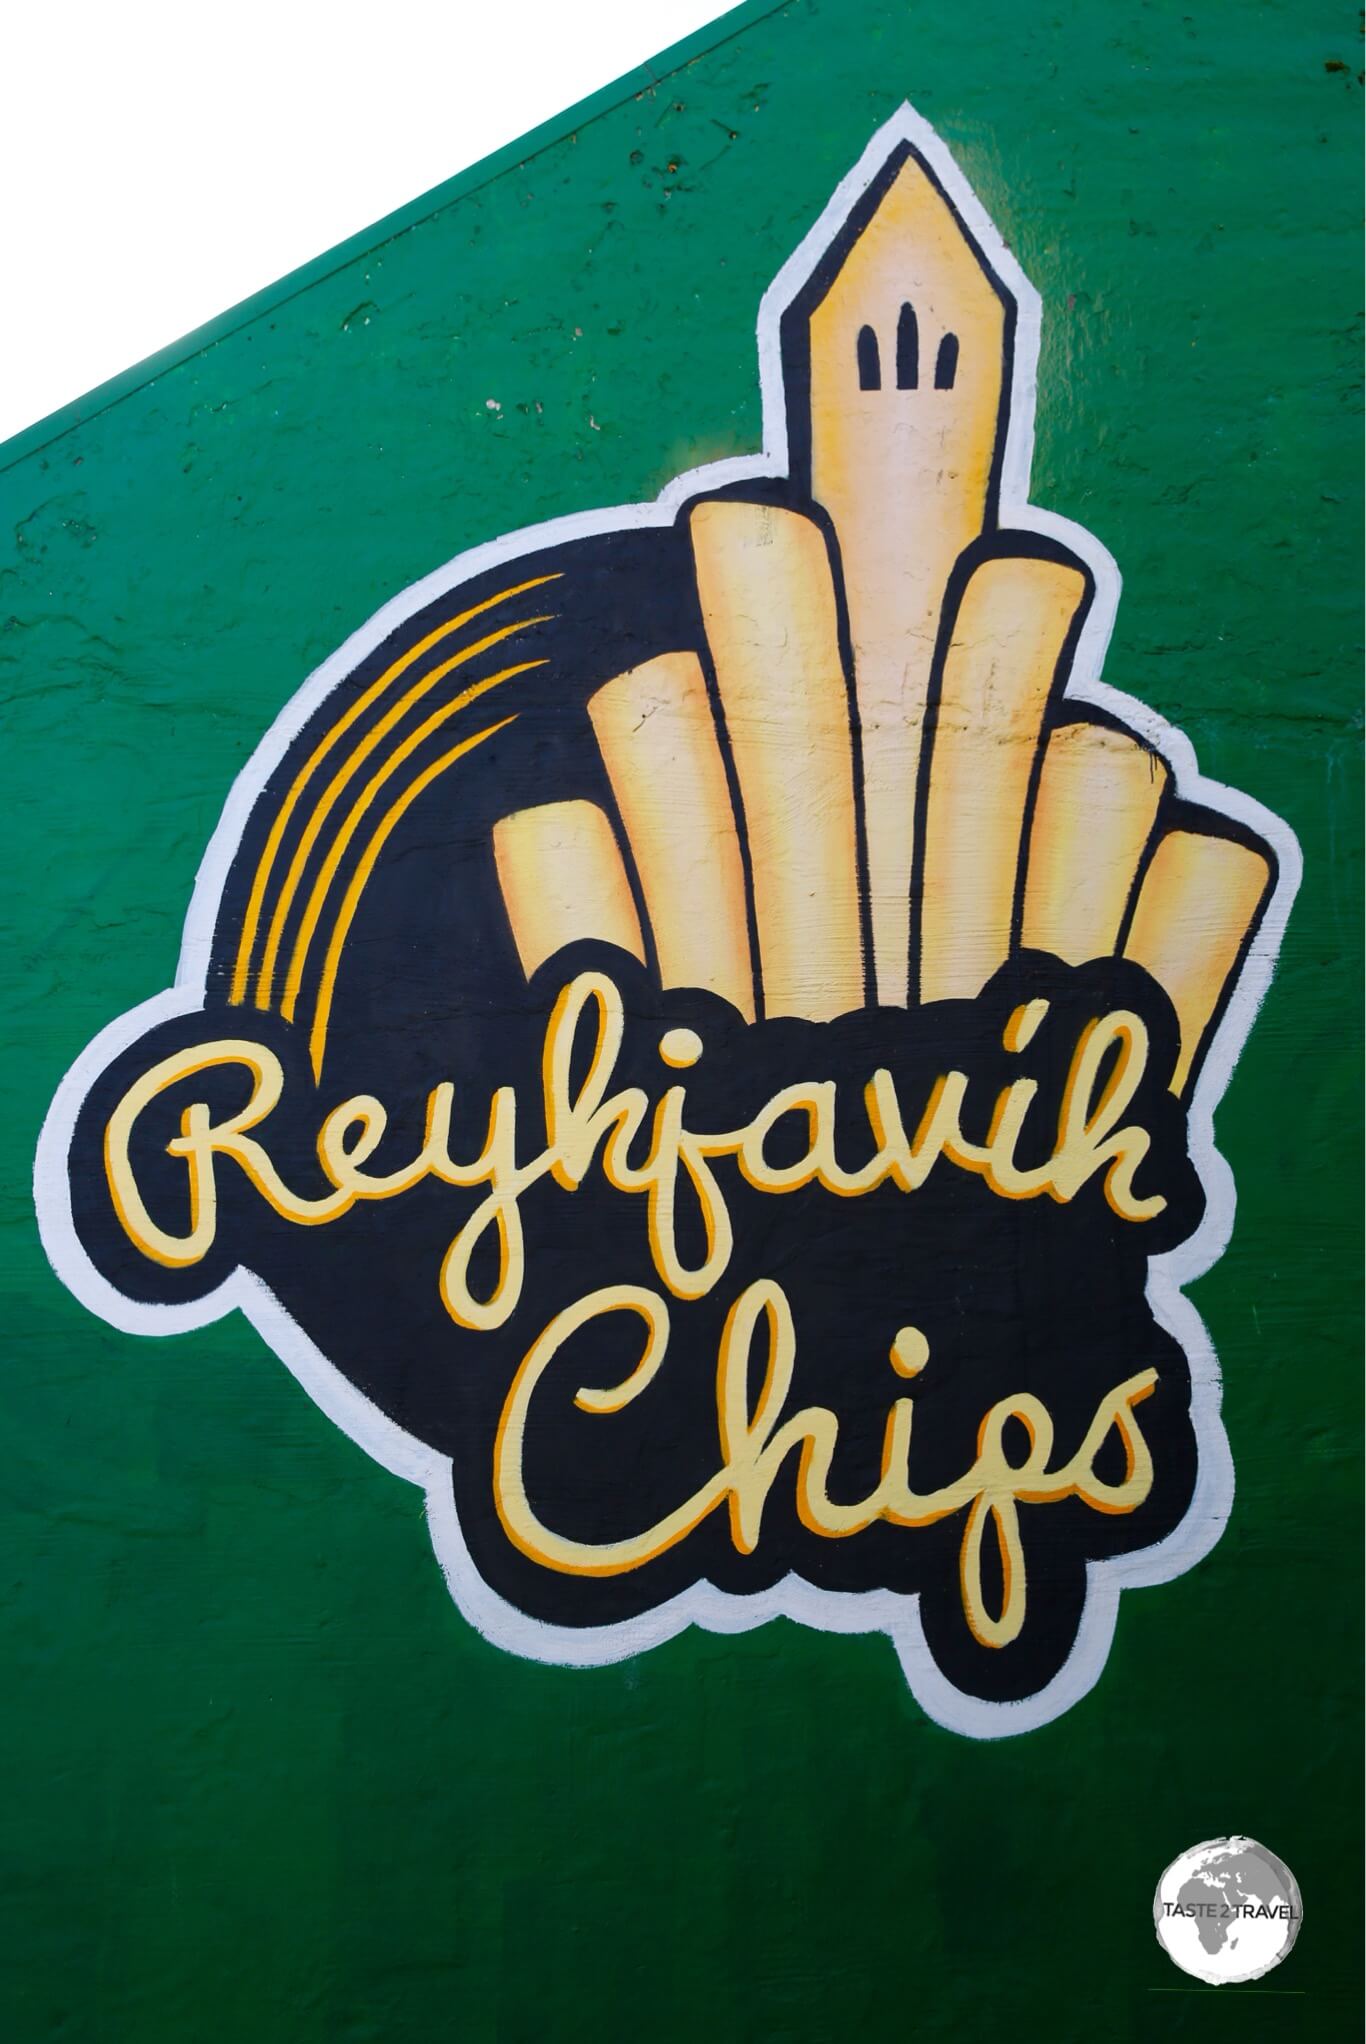 Chip shop in Reykjavik.